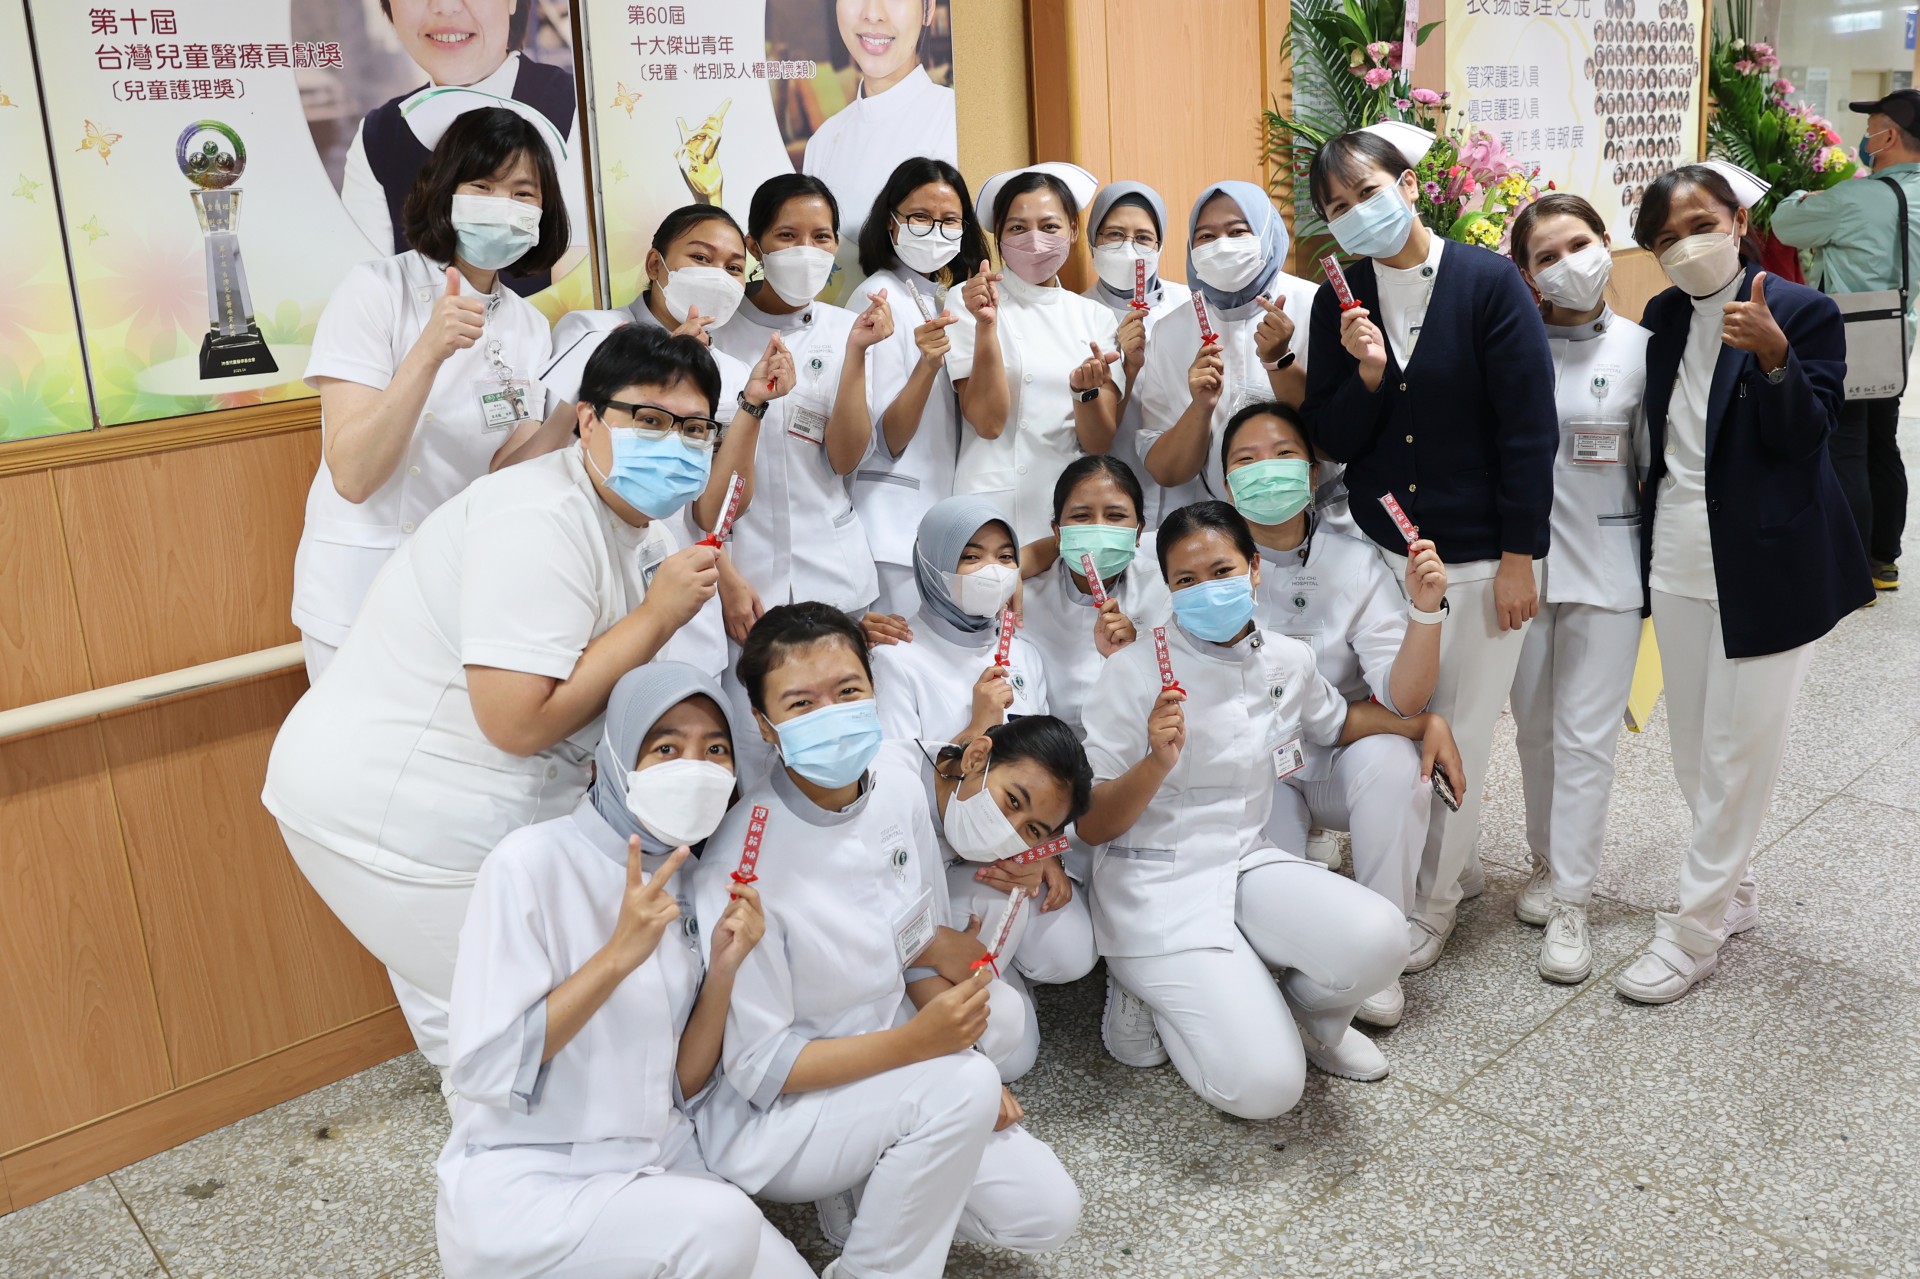 慶祝國際護師節，花蓮慈院護理長廊之光揭牌，印尼慈濟醫院來臺外訓護理師也參與盛會，共享護理師的榮耀。